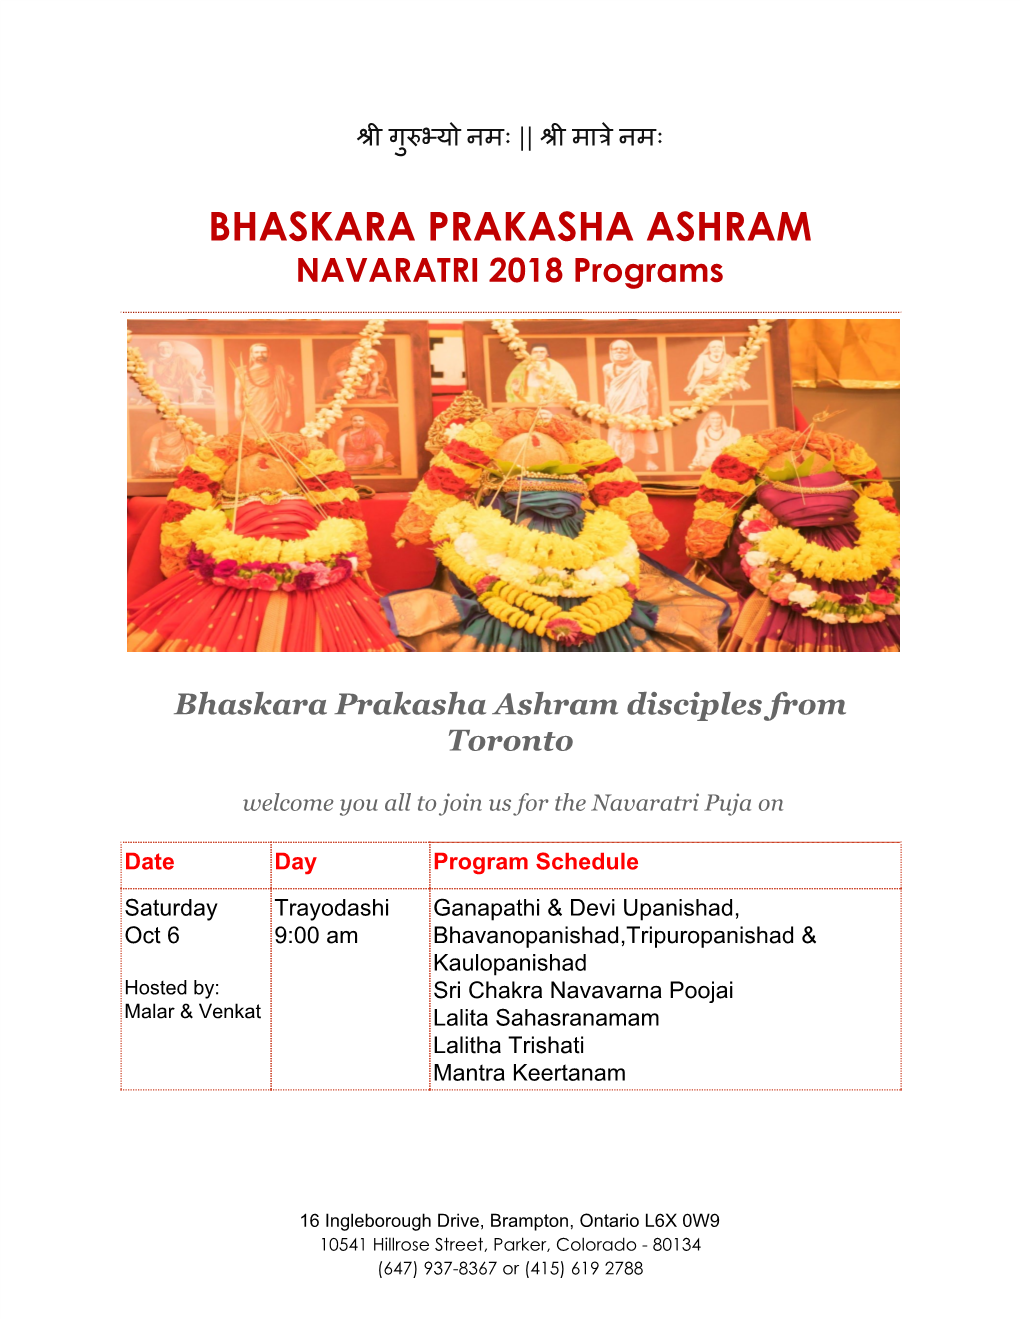 BHASKARA PRAKASHA ASHRAM NAVARATRI 2018 Programs